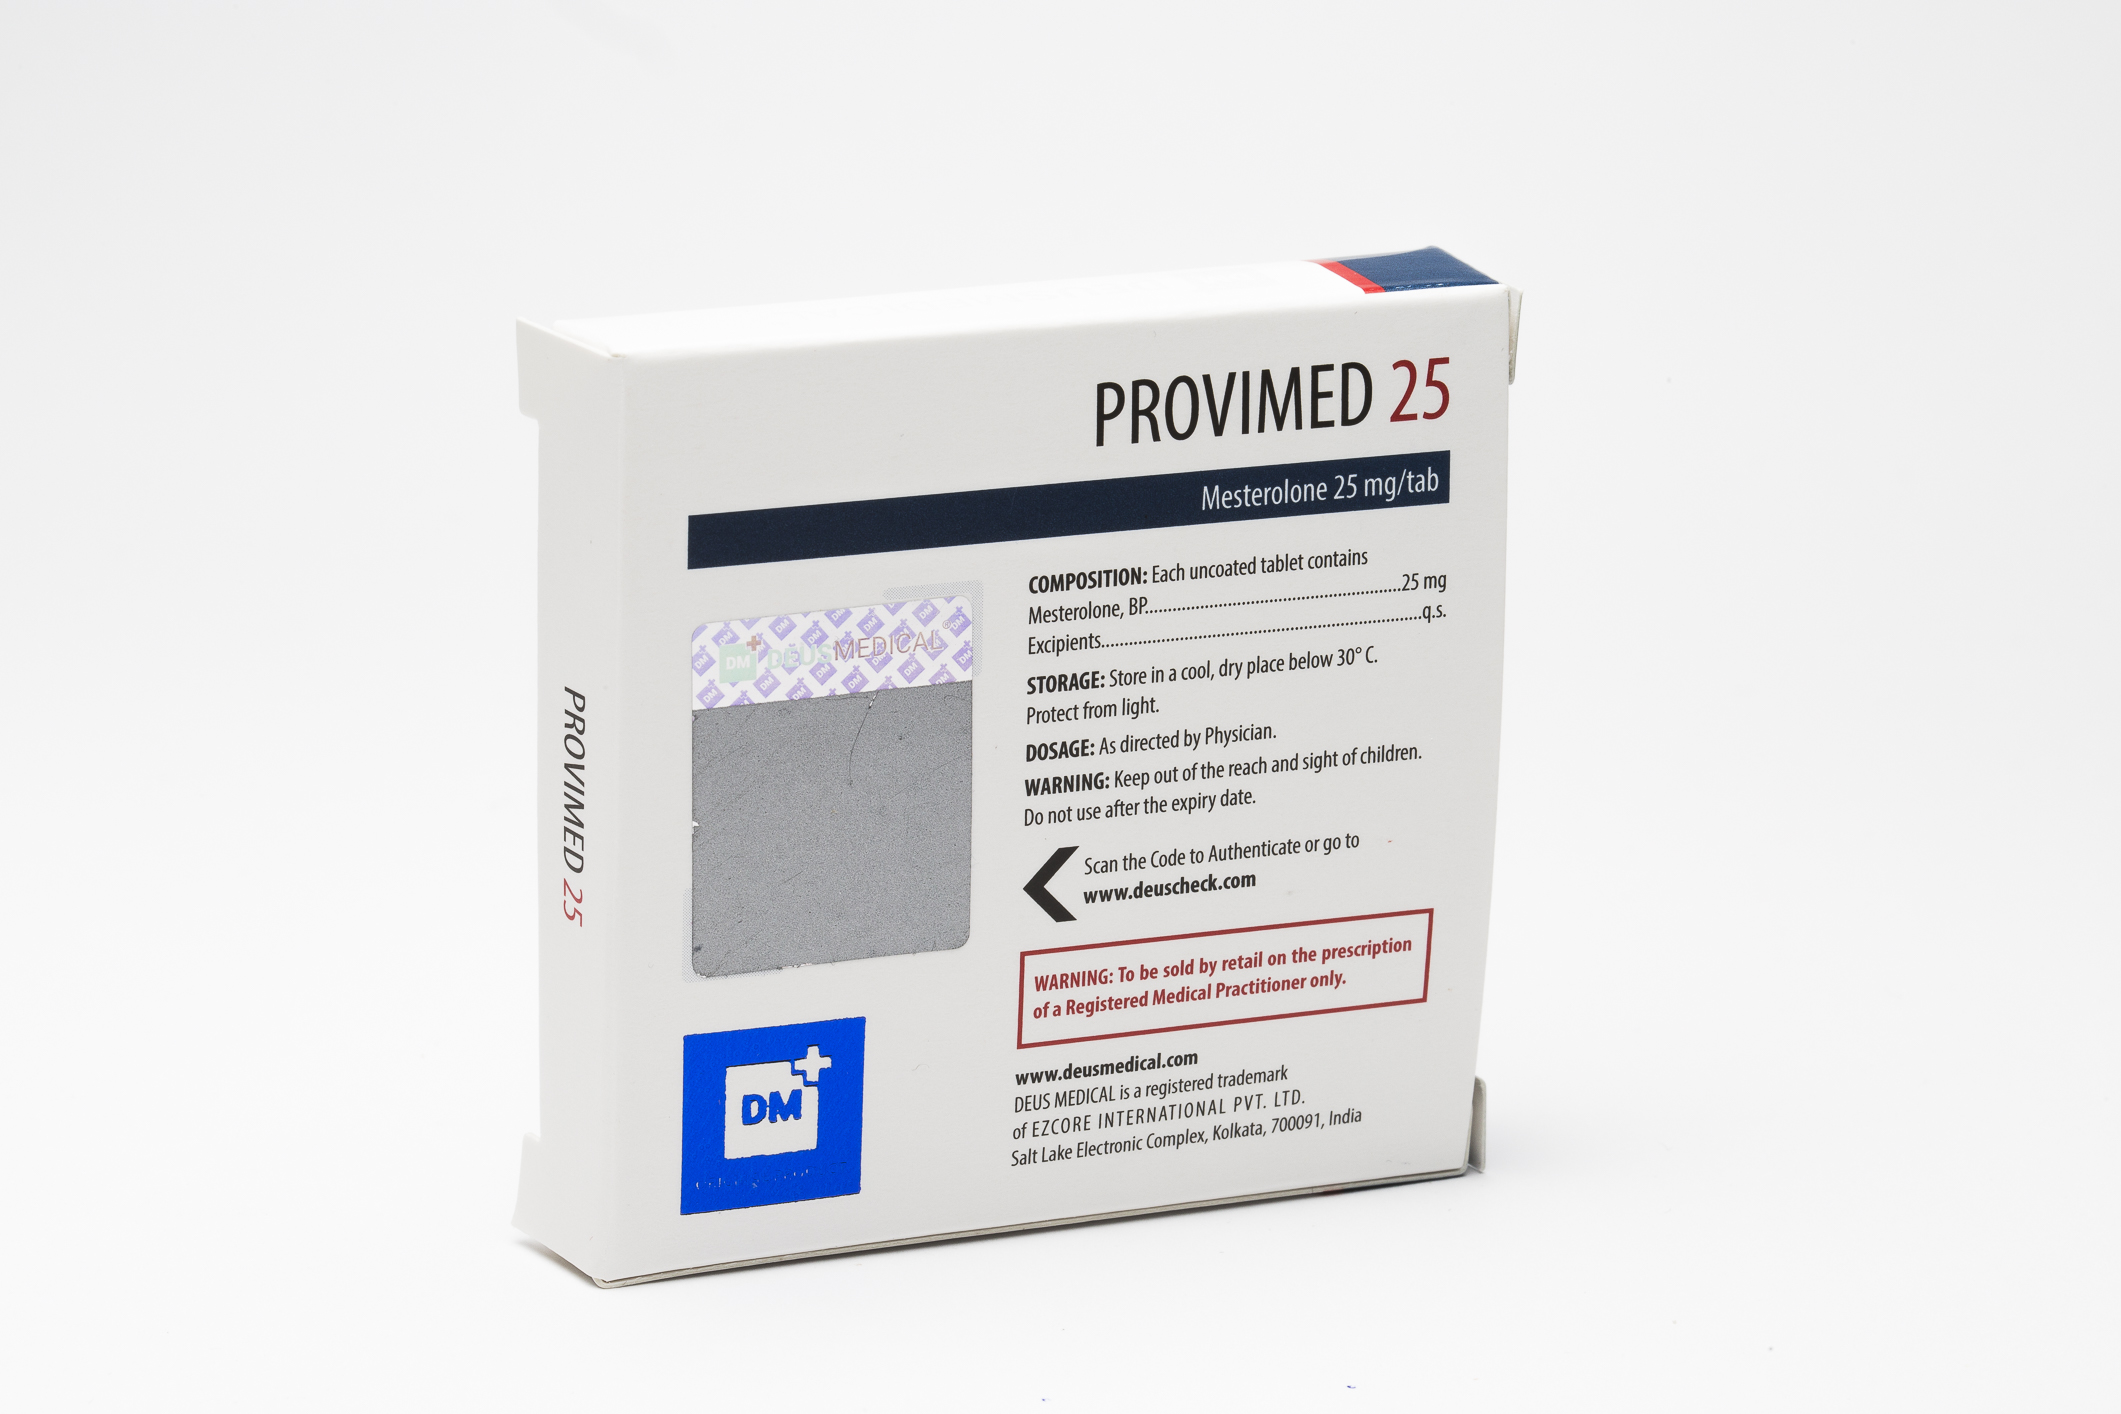 Jetzt können Sie Ihr Pharma TREN 50 50 mg Pharmacom Labs sicher erstellen lassen